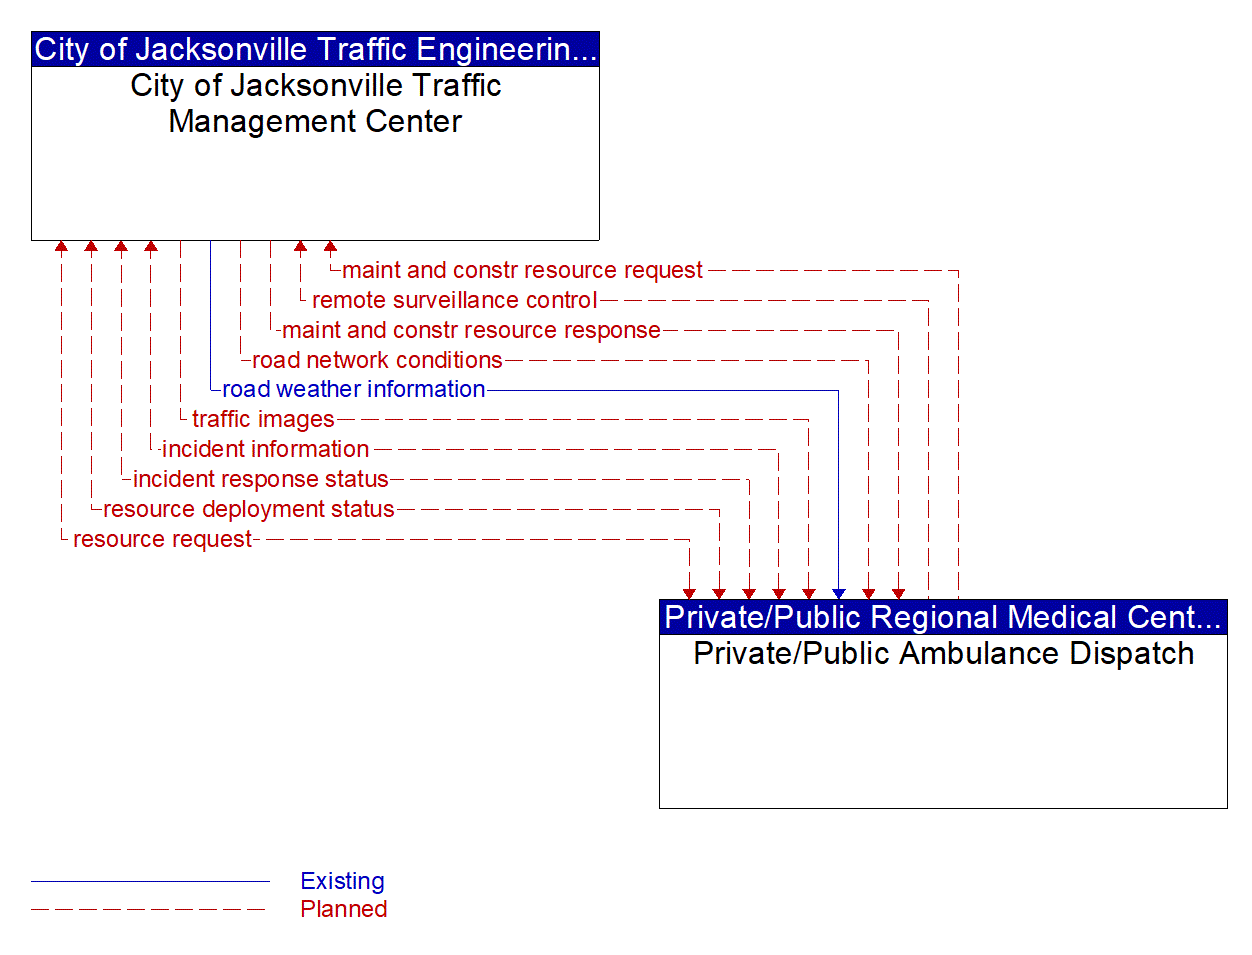 Architecture Flow Diagram: Private/Public Ambulance Dispatch <--> City of Jacksonville Traffic Management Center